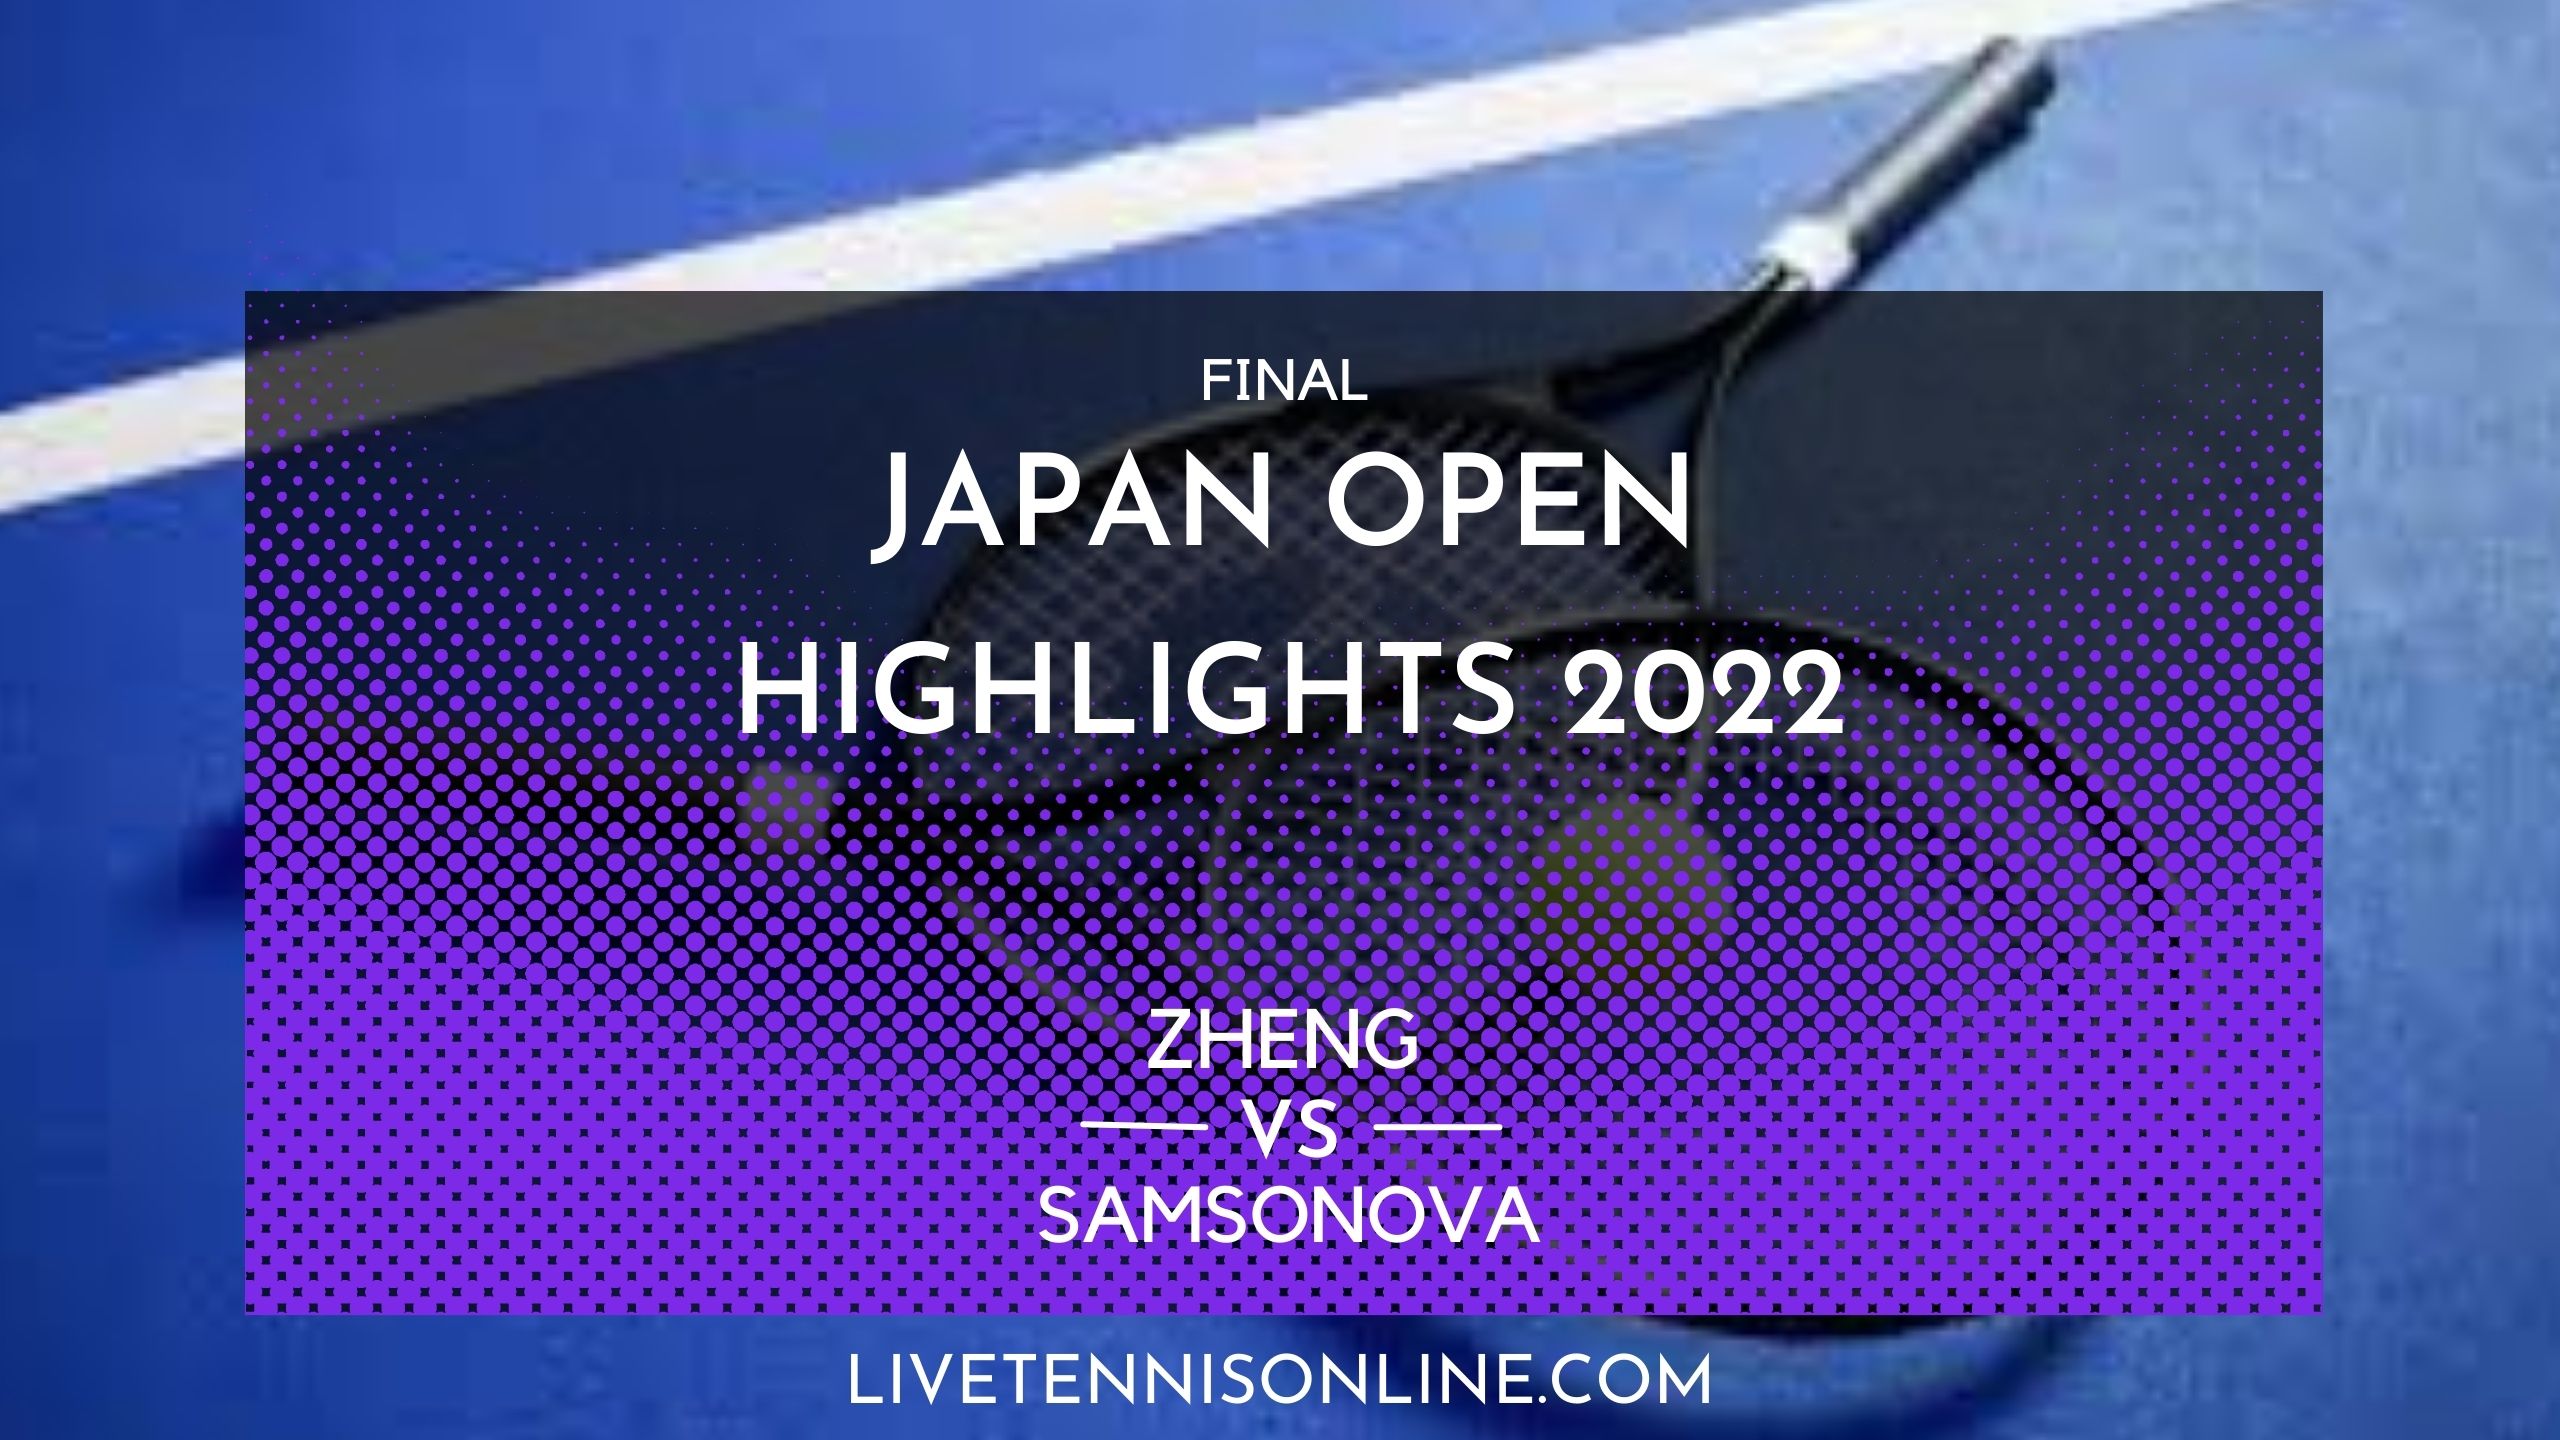 Zheng Vs Samsonova Final Highlights 2022 Japan Tennis Open